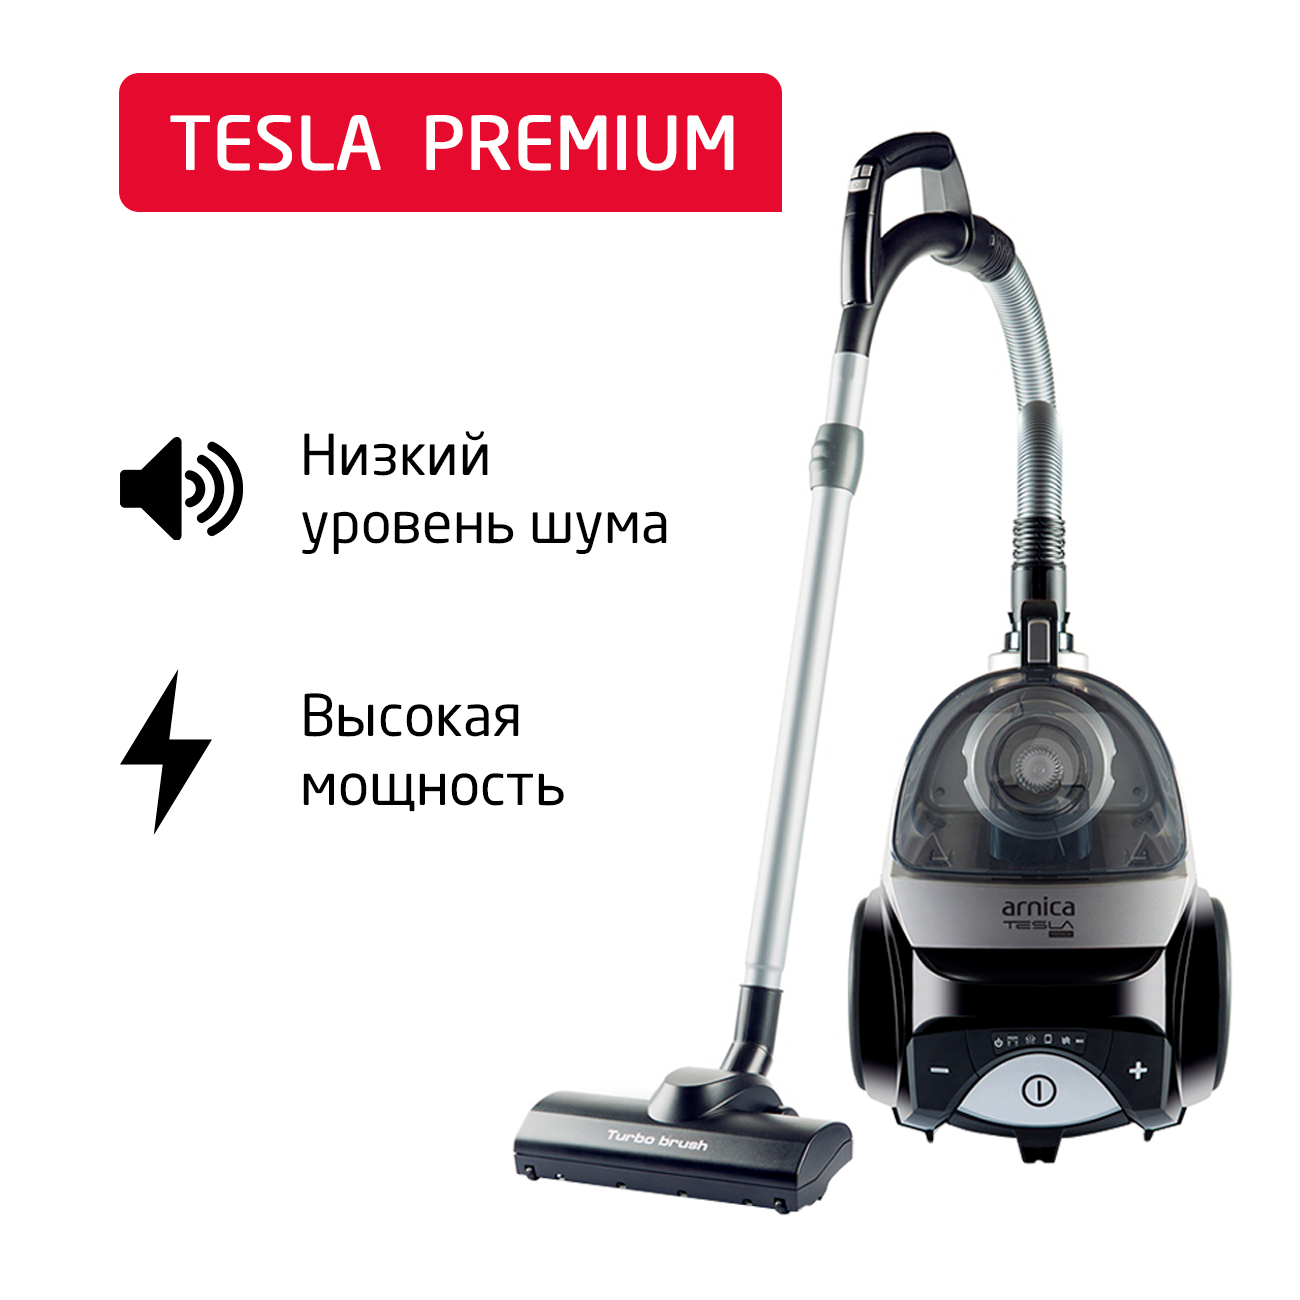 Пылесос ARNICA Tesla Premium серебристый, черный пылесос arnica